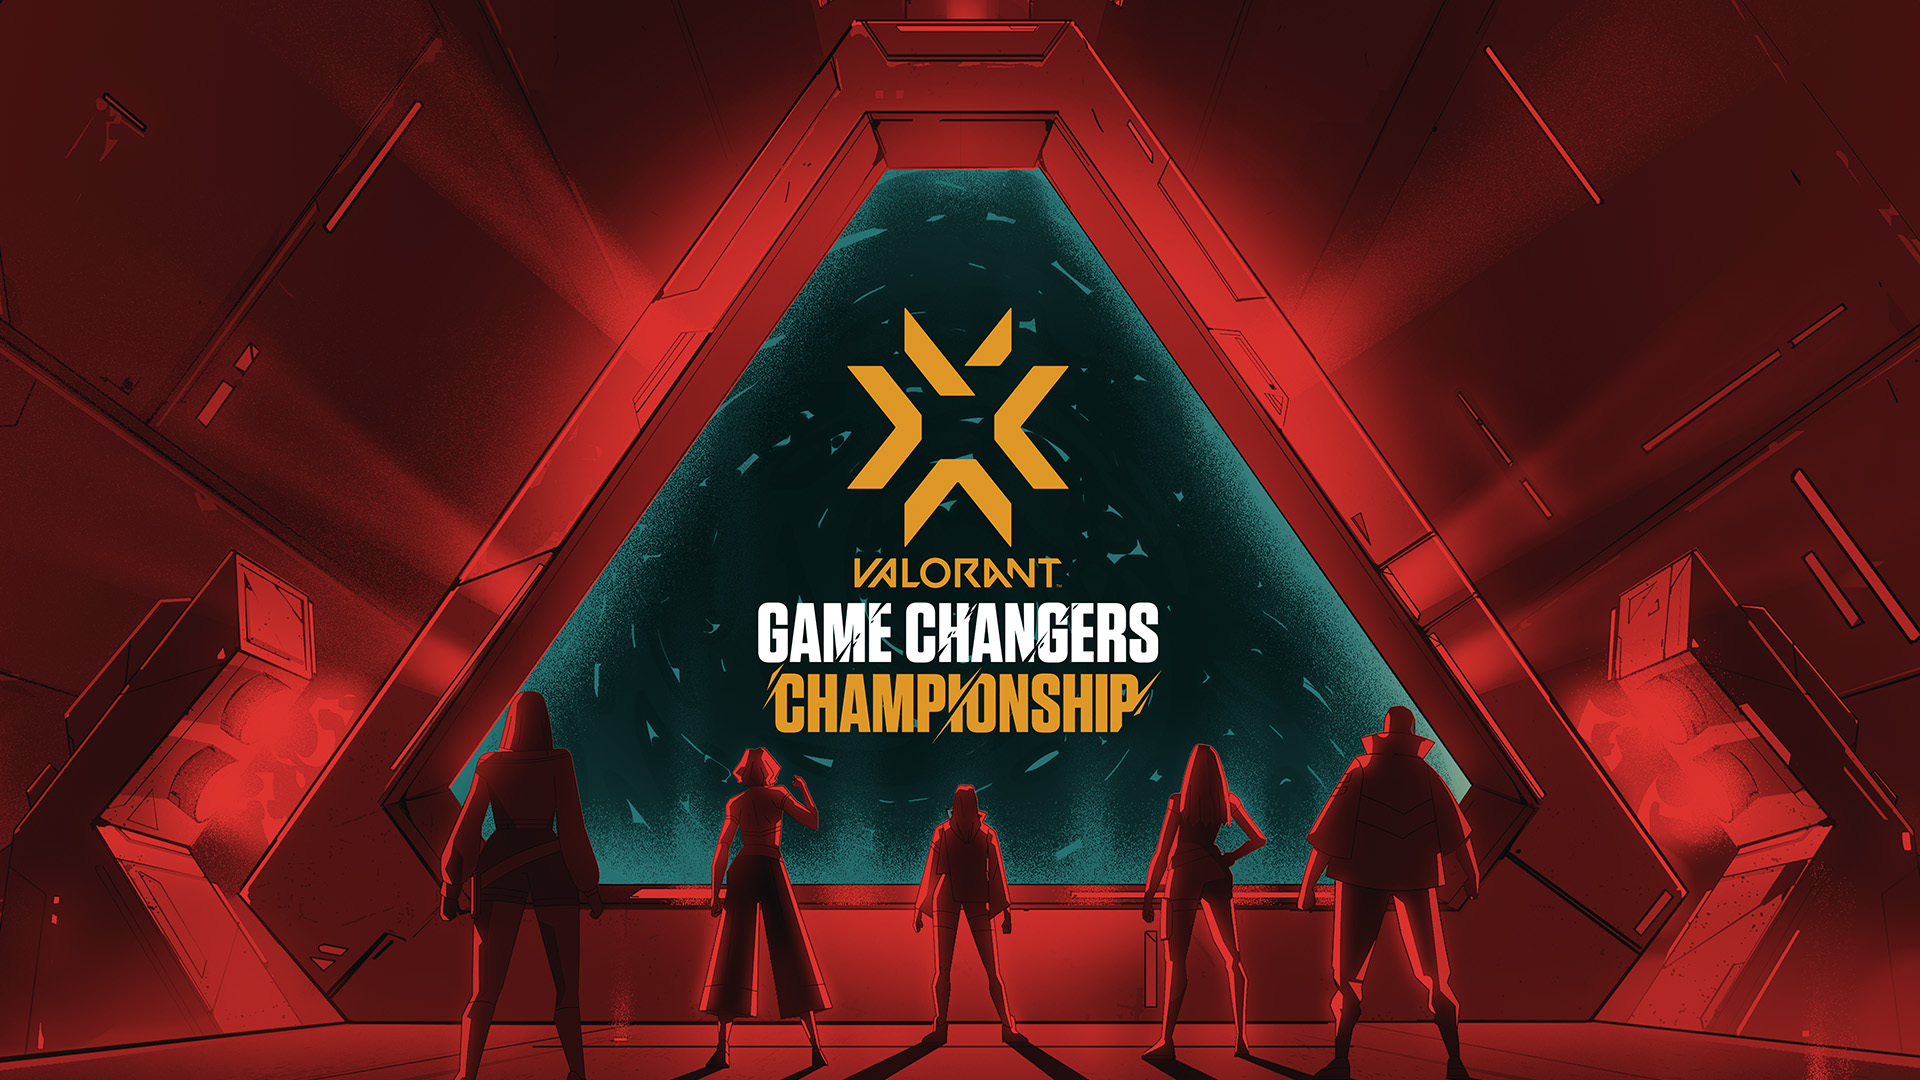 「VALORANT GAME CHANGERS CHAMPIONSHIP」のグループ組み合わせとスケジュールを公開 VALORANT